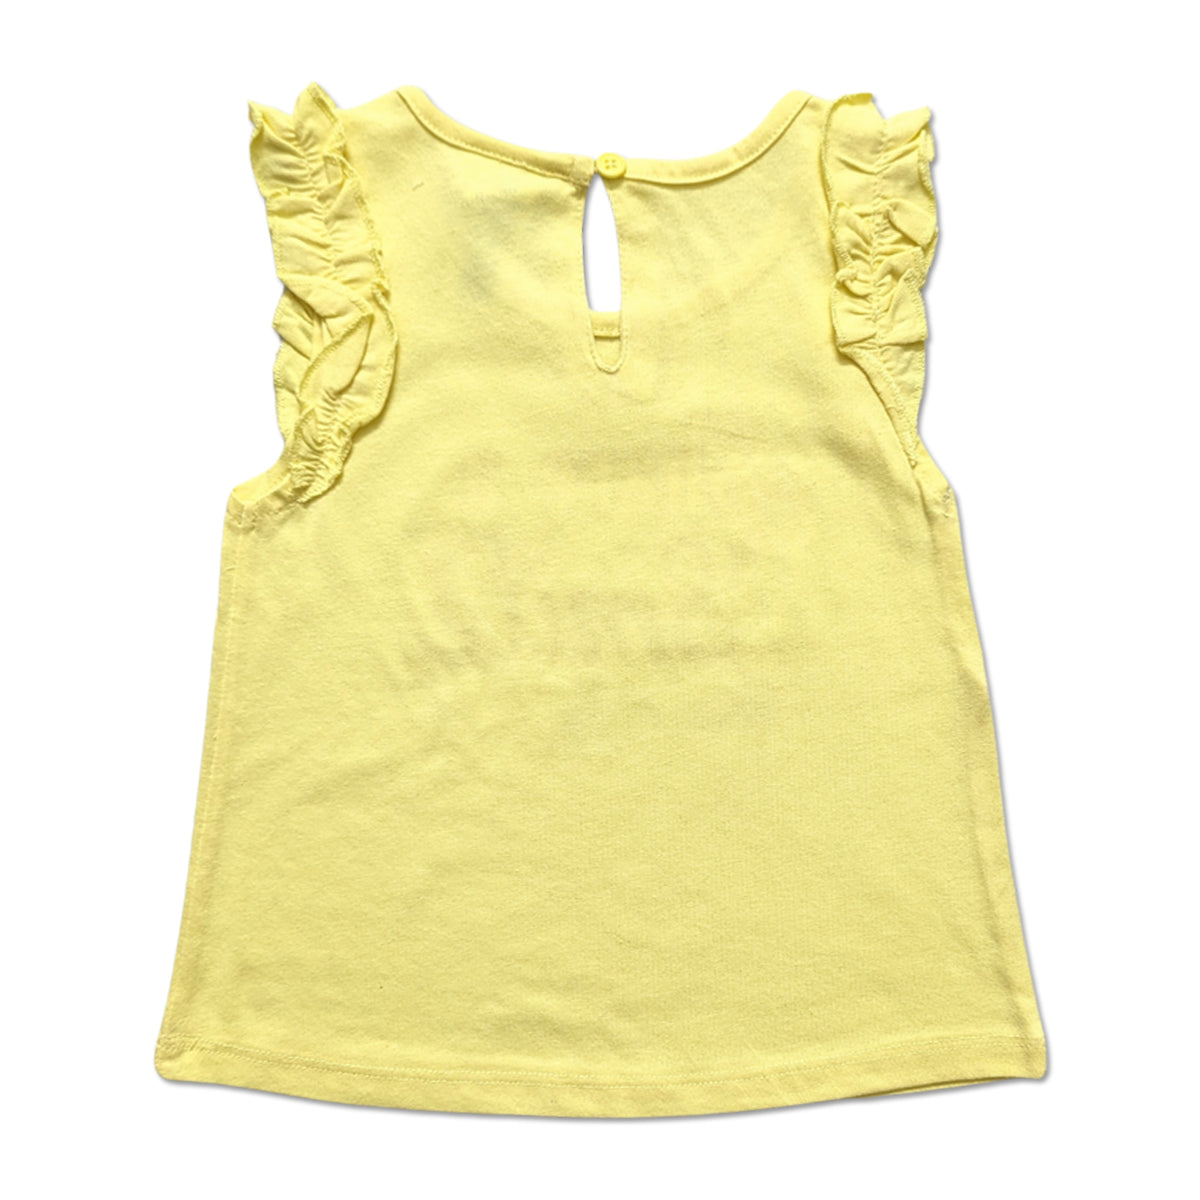 Brand Expo Premium Quality Branded Sleeveless T-Shirt for Girl's